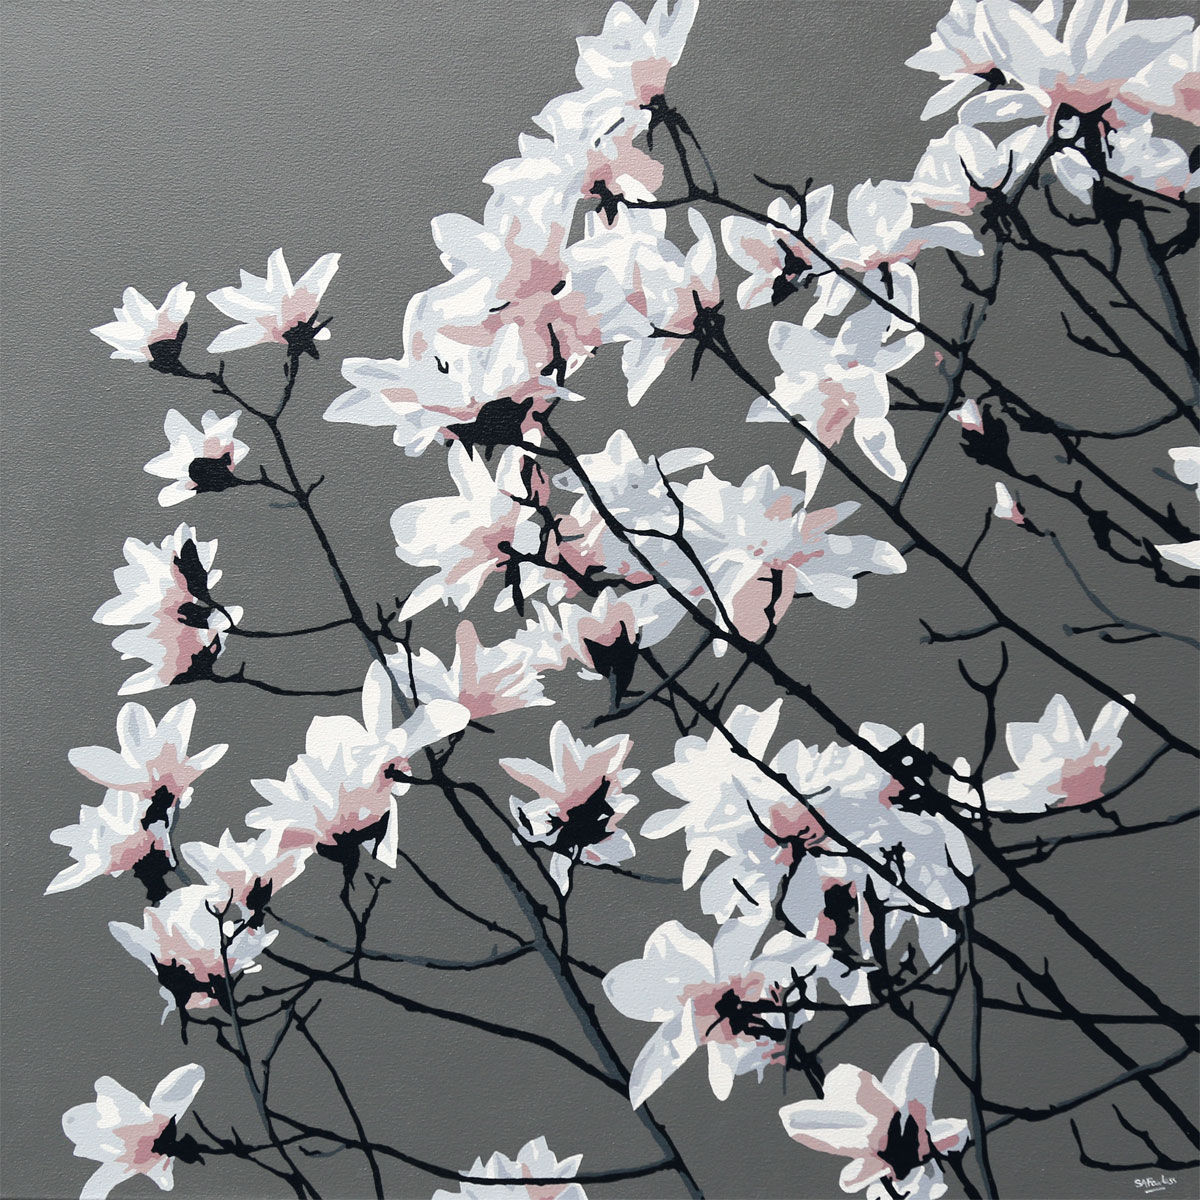 White blossom image